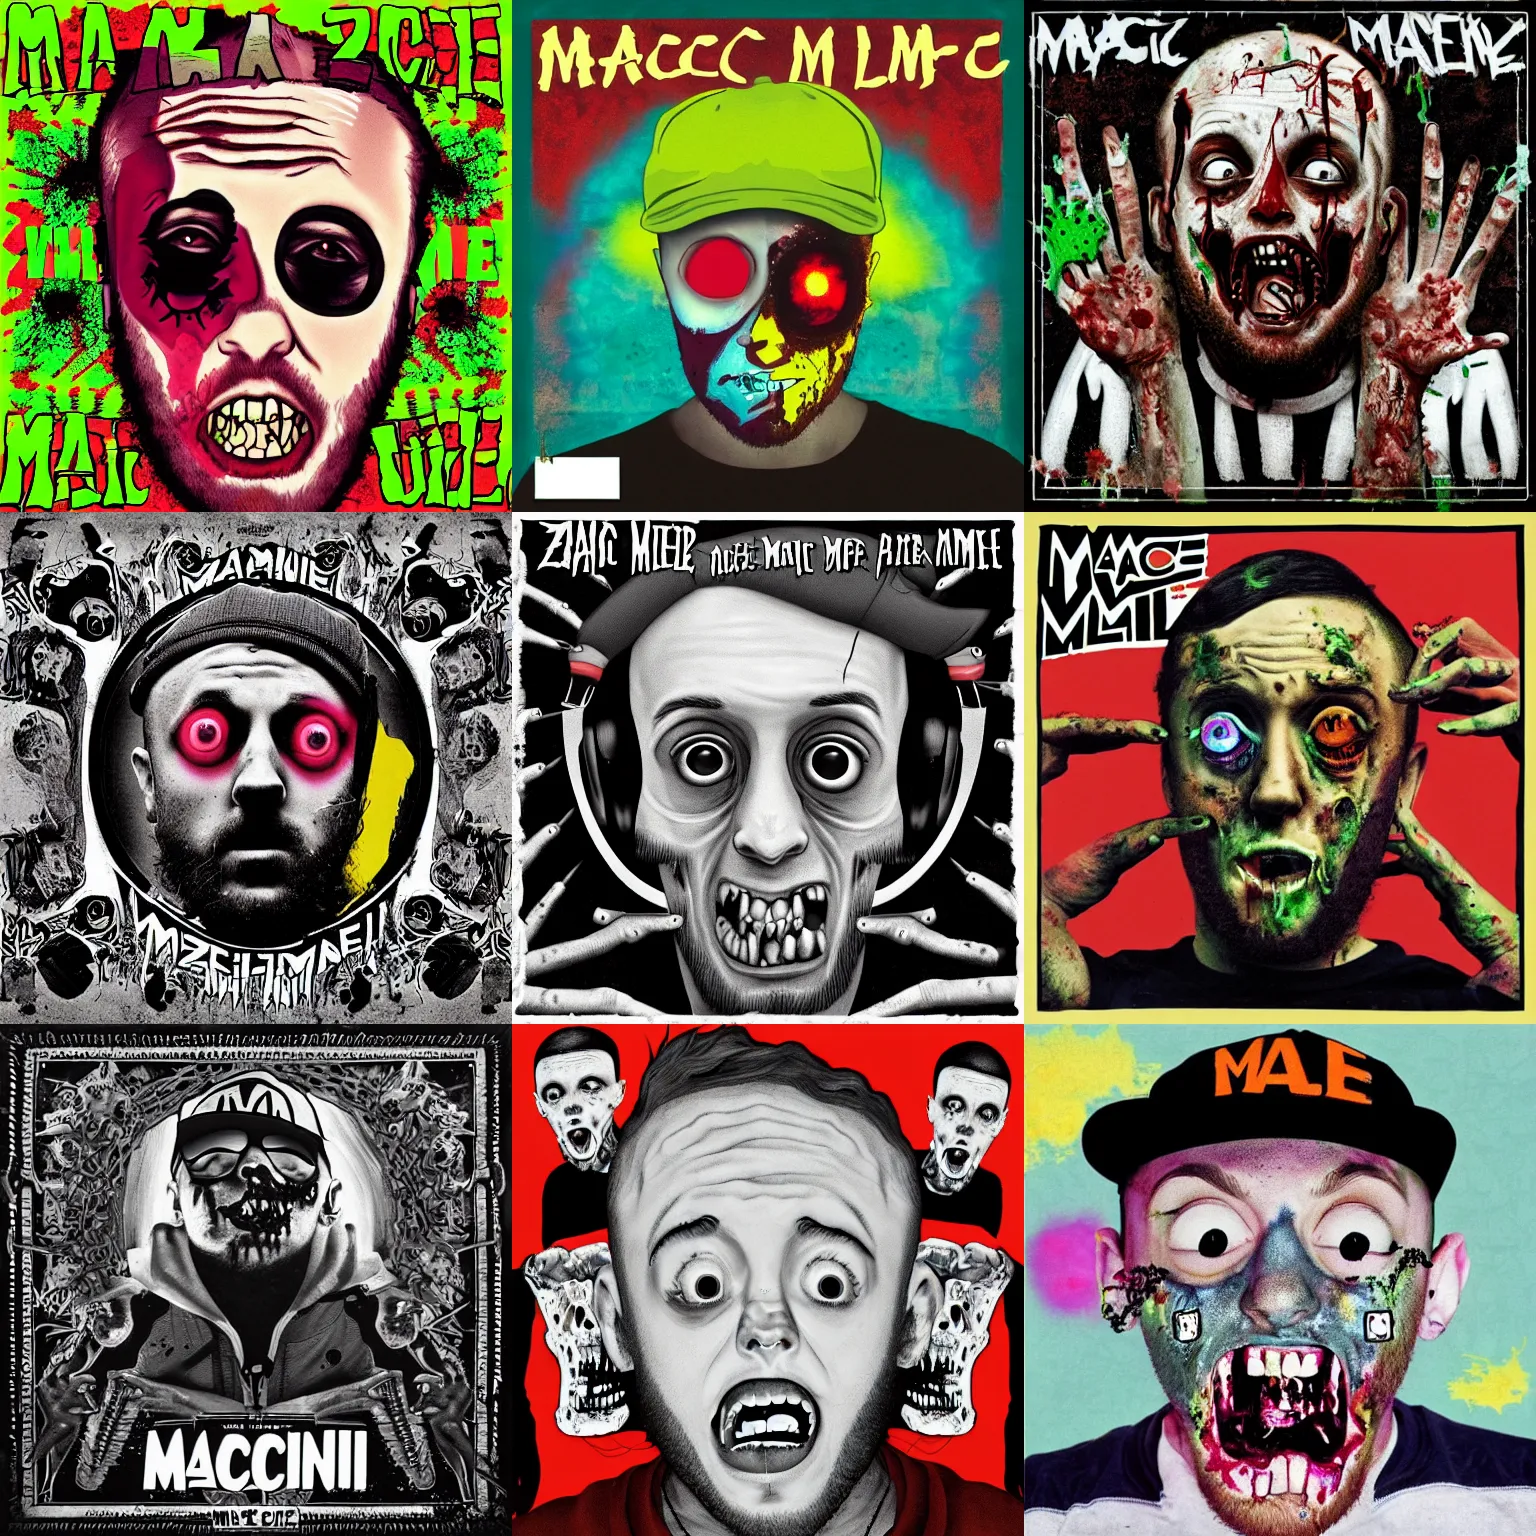 Prompt: mac miller zombie album cover